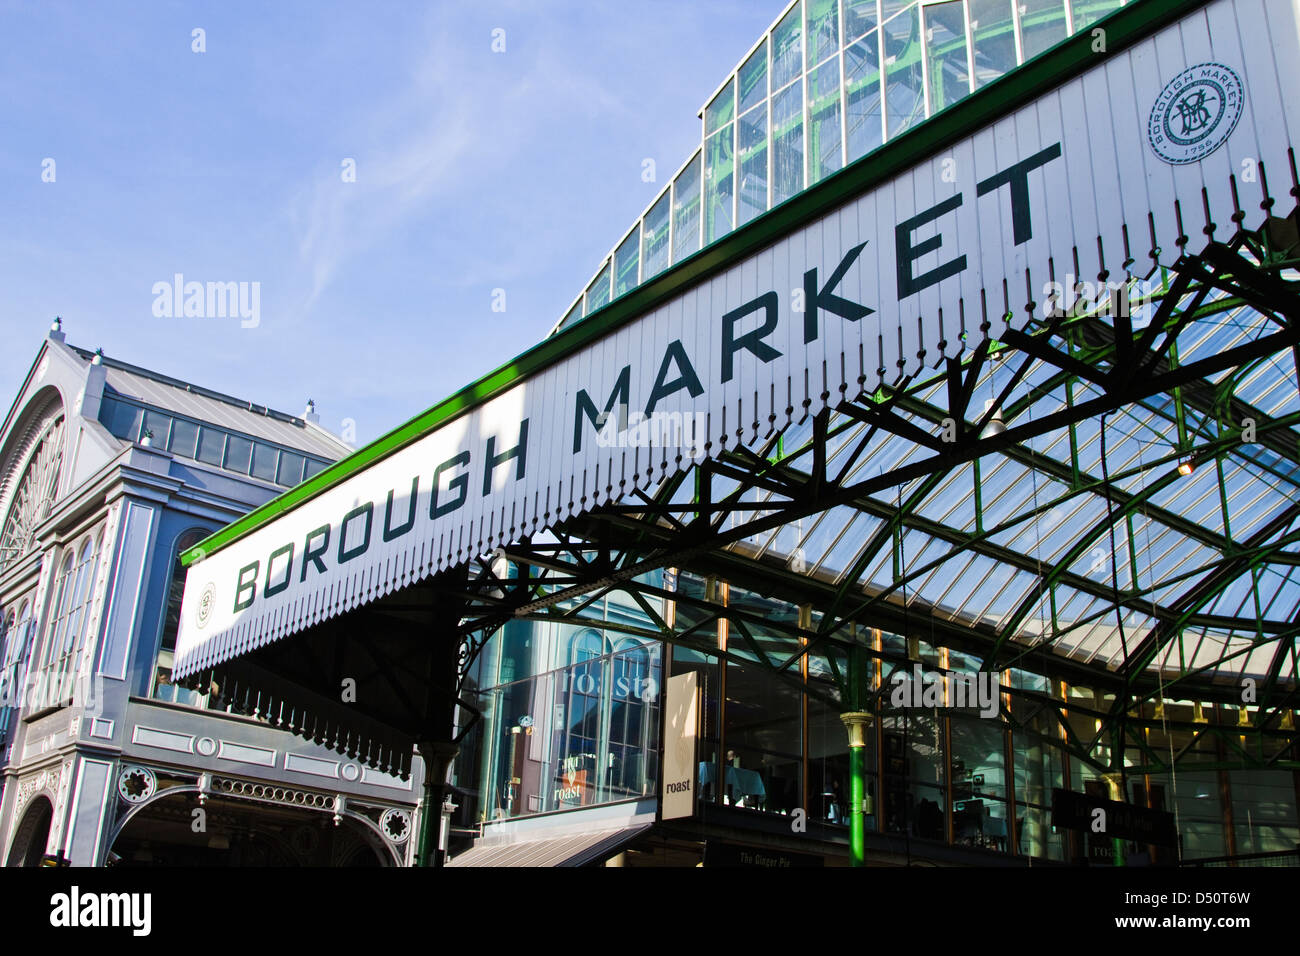 Borough market Stock Photo